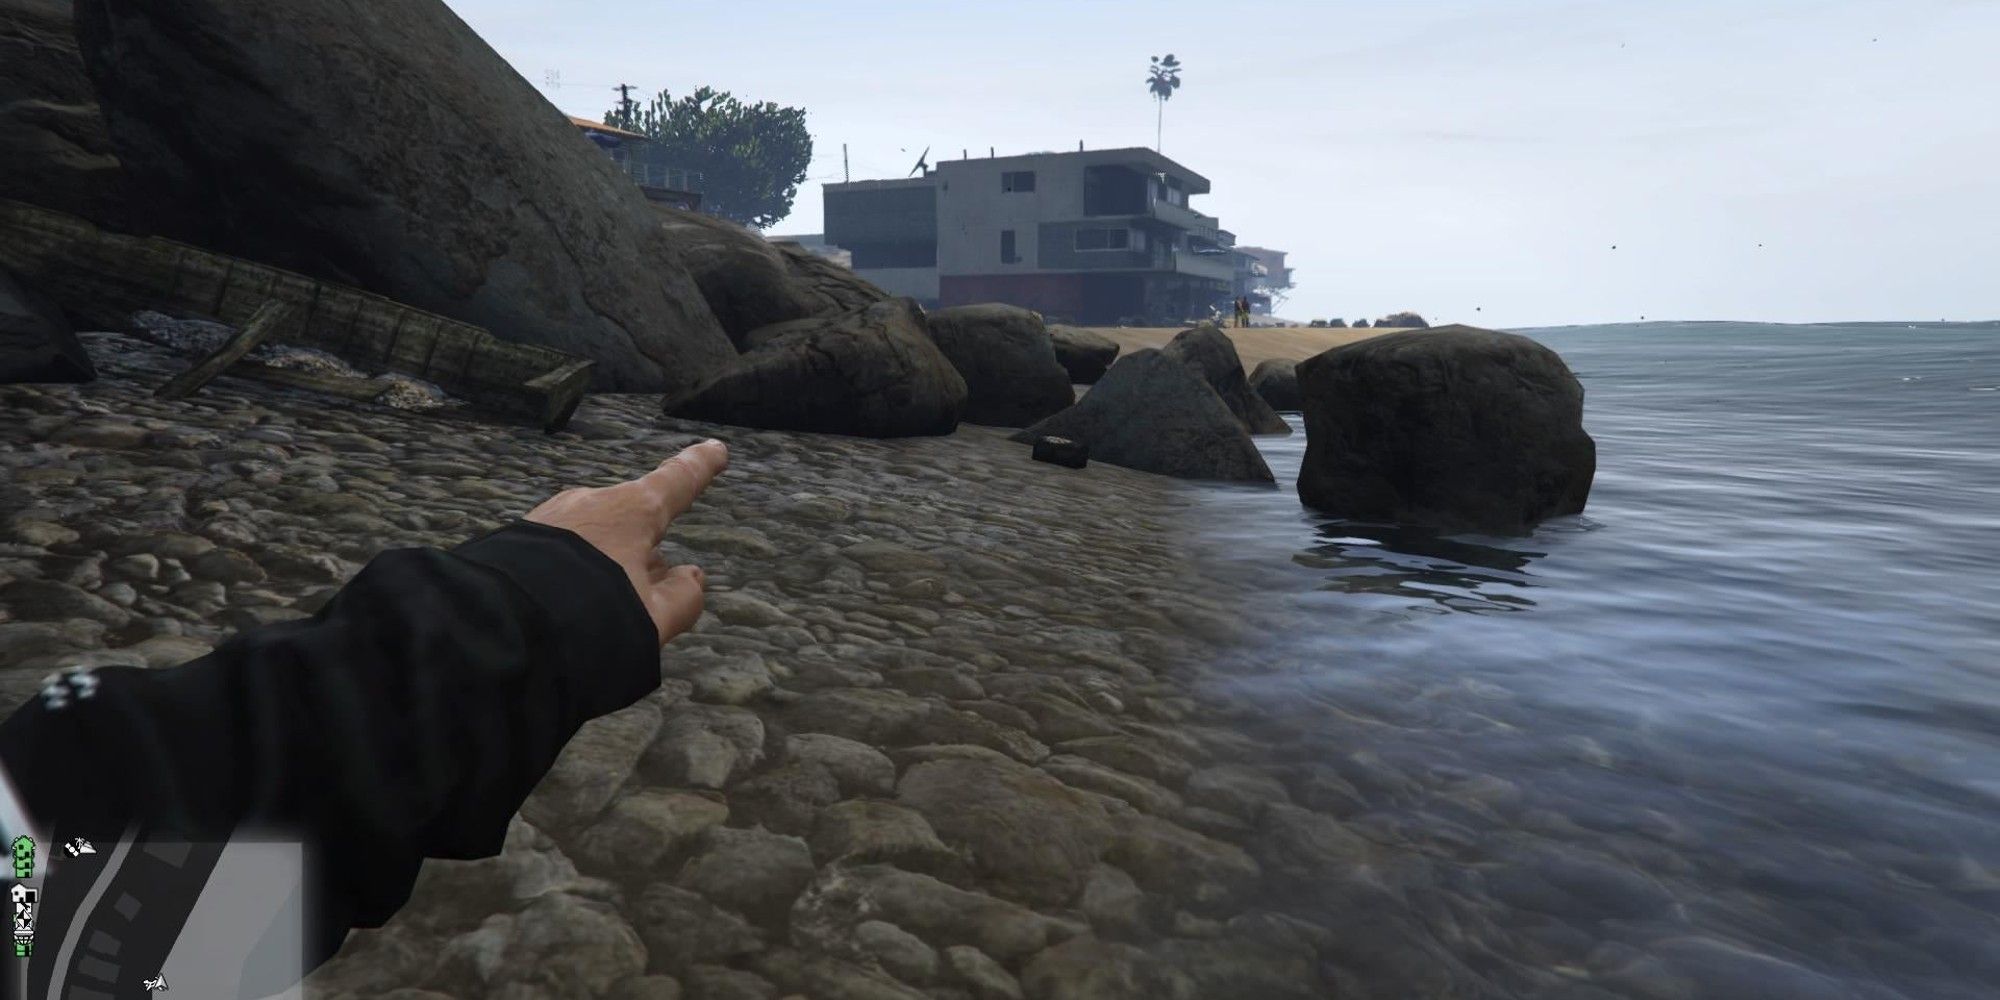 A Shipwreck on the Los Santos coast in GTA Online